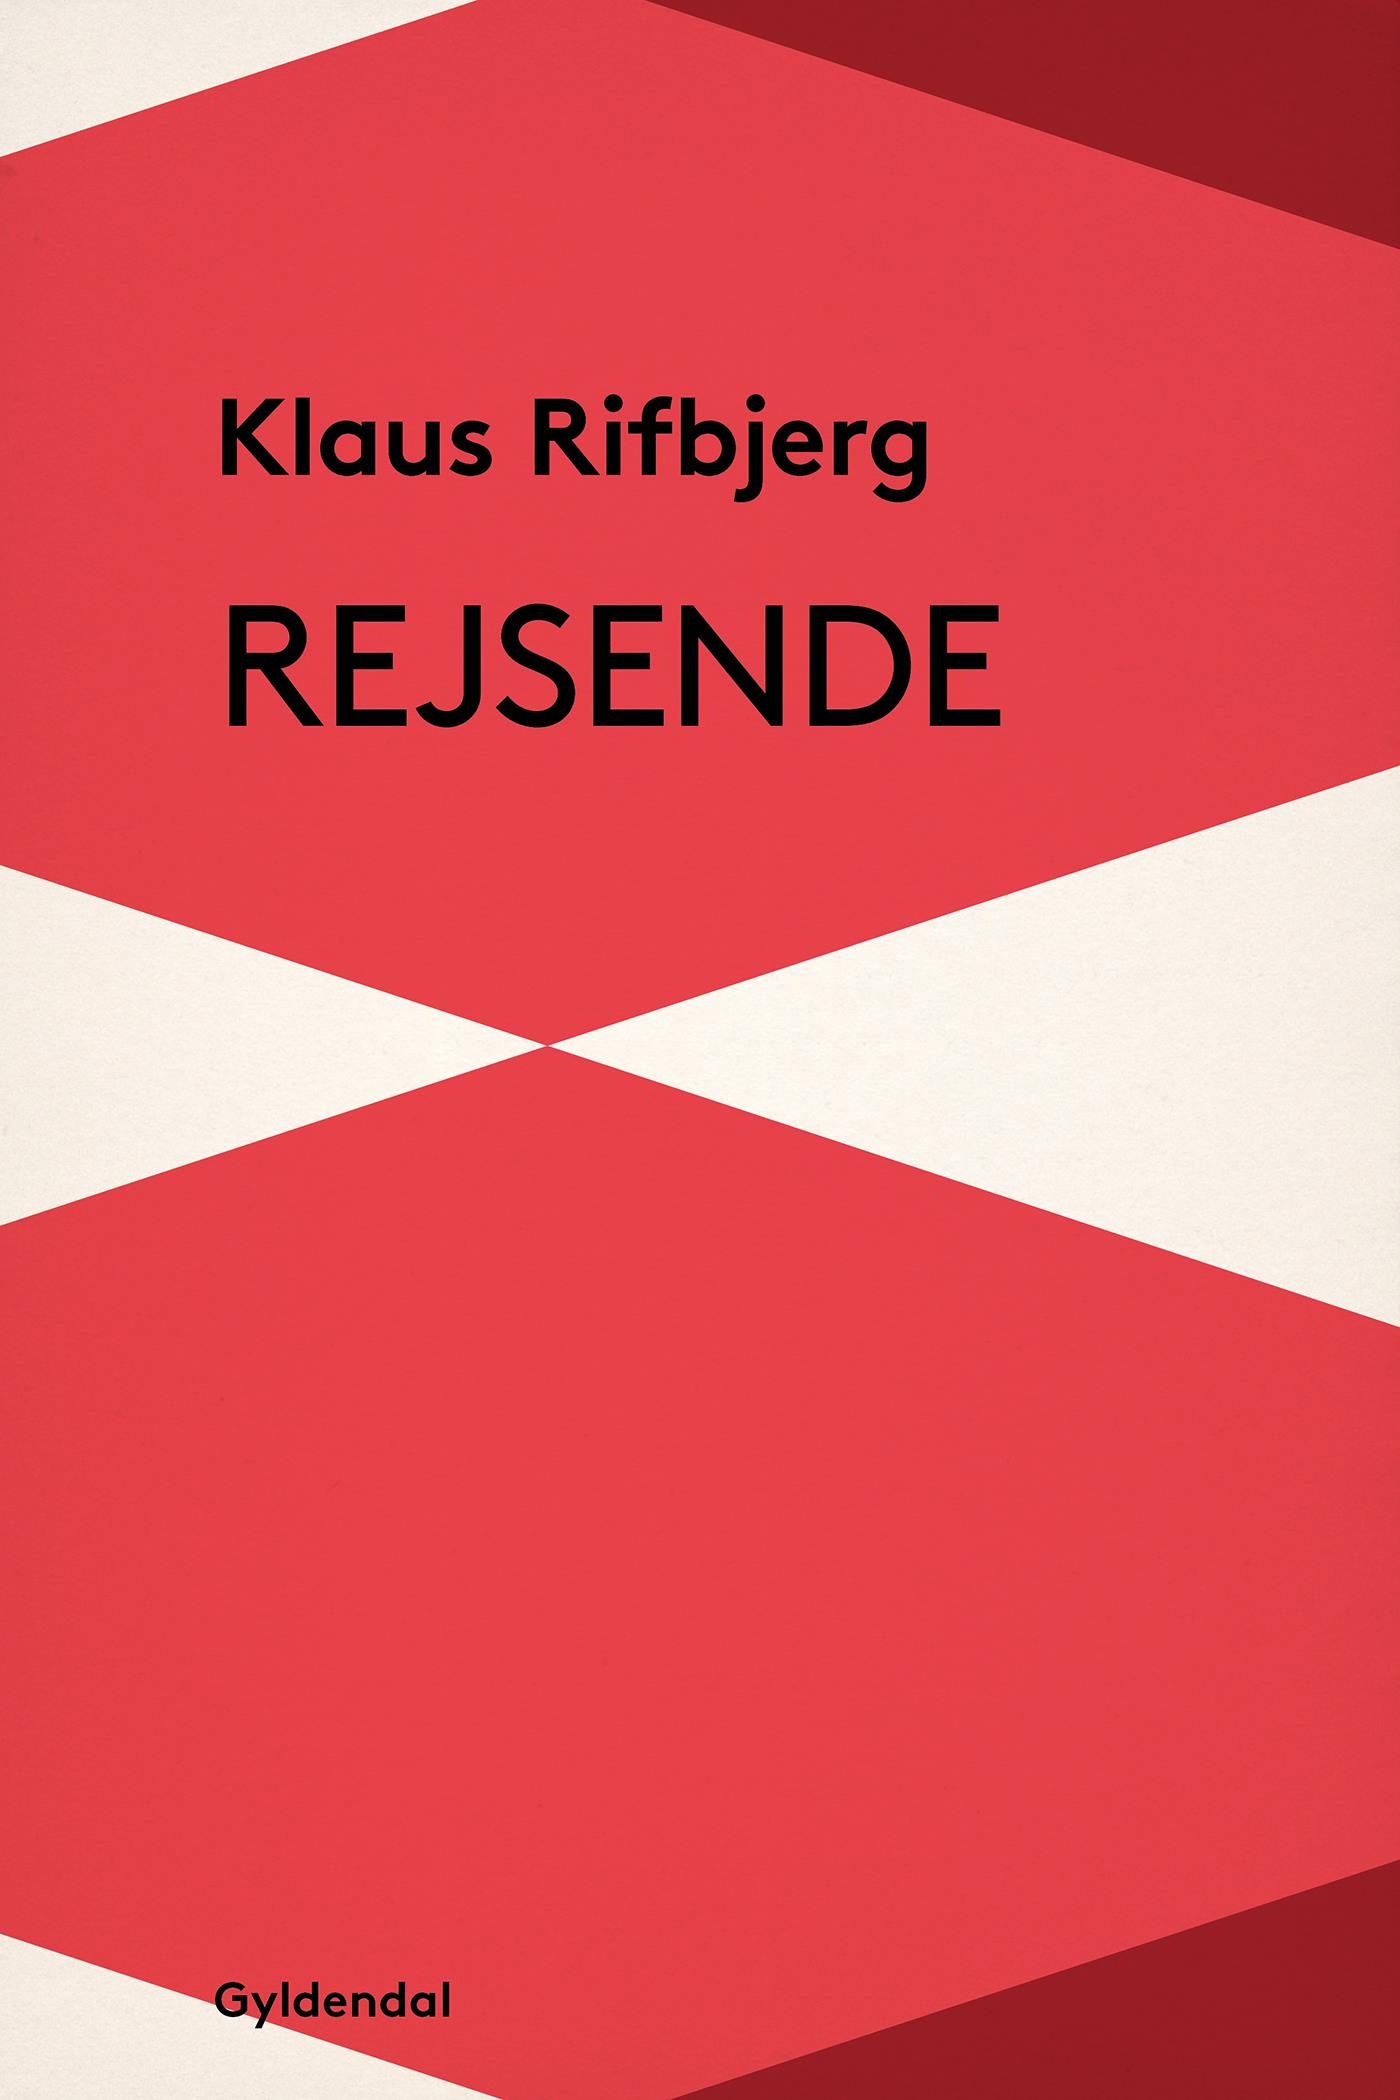 Rejsende, eBook by Klaus Rifbjerg